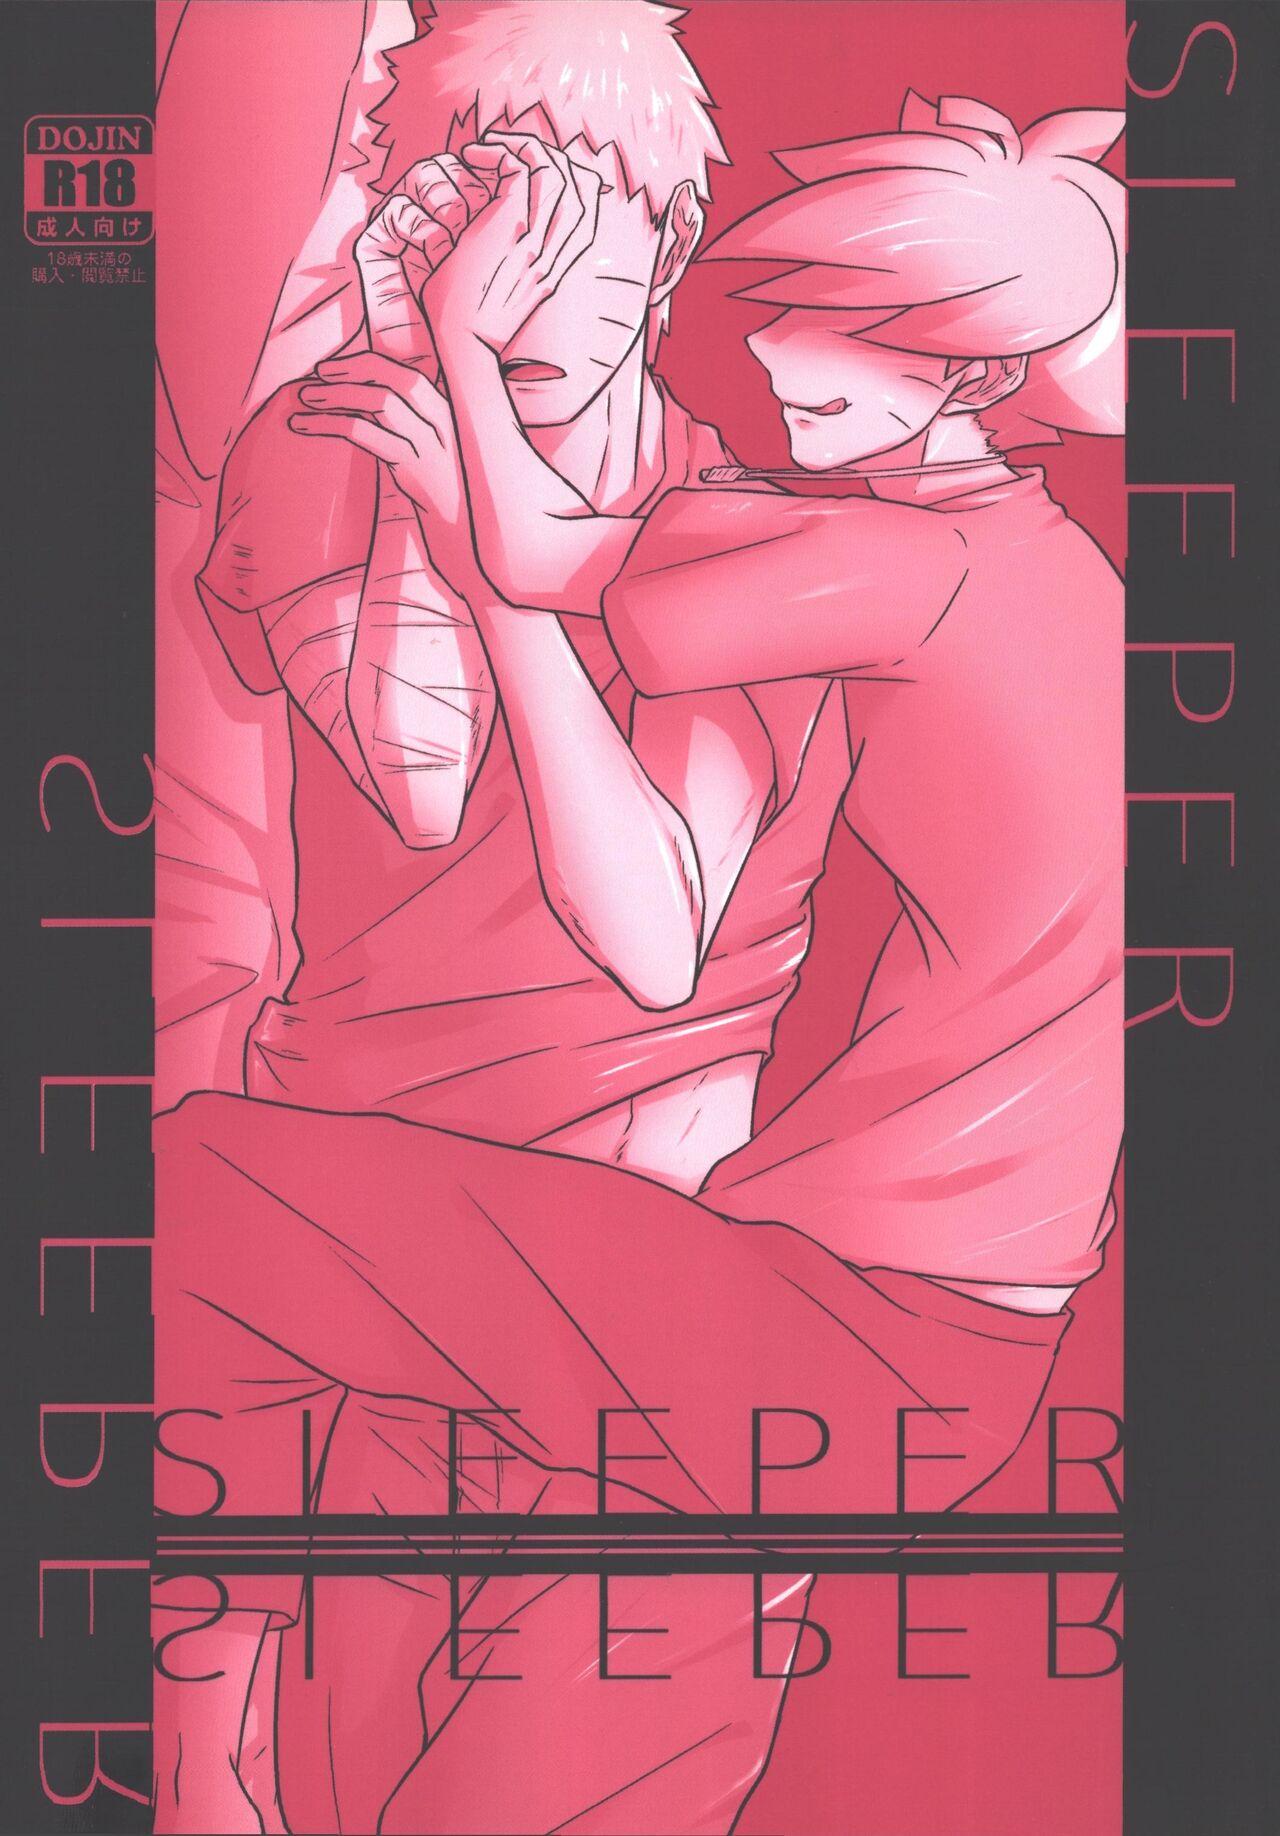 SLEEPER 0